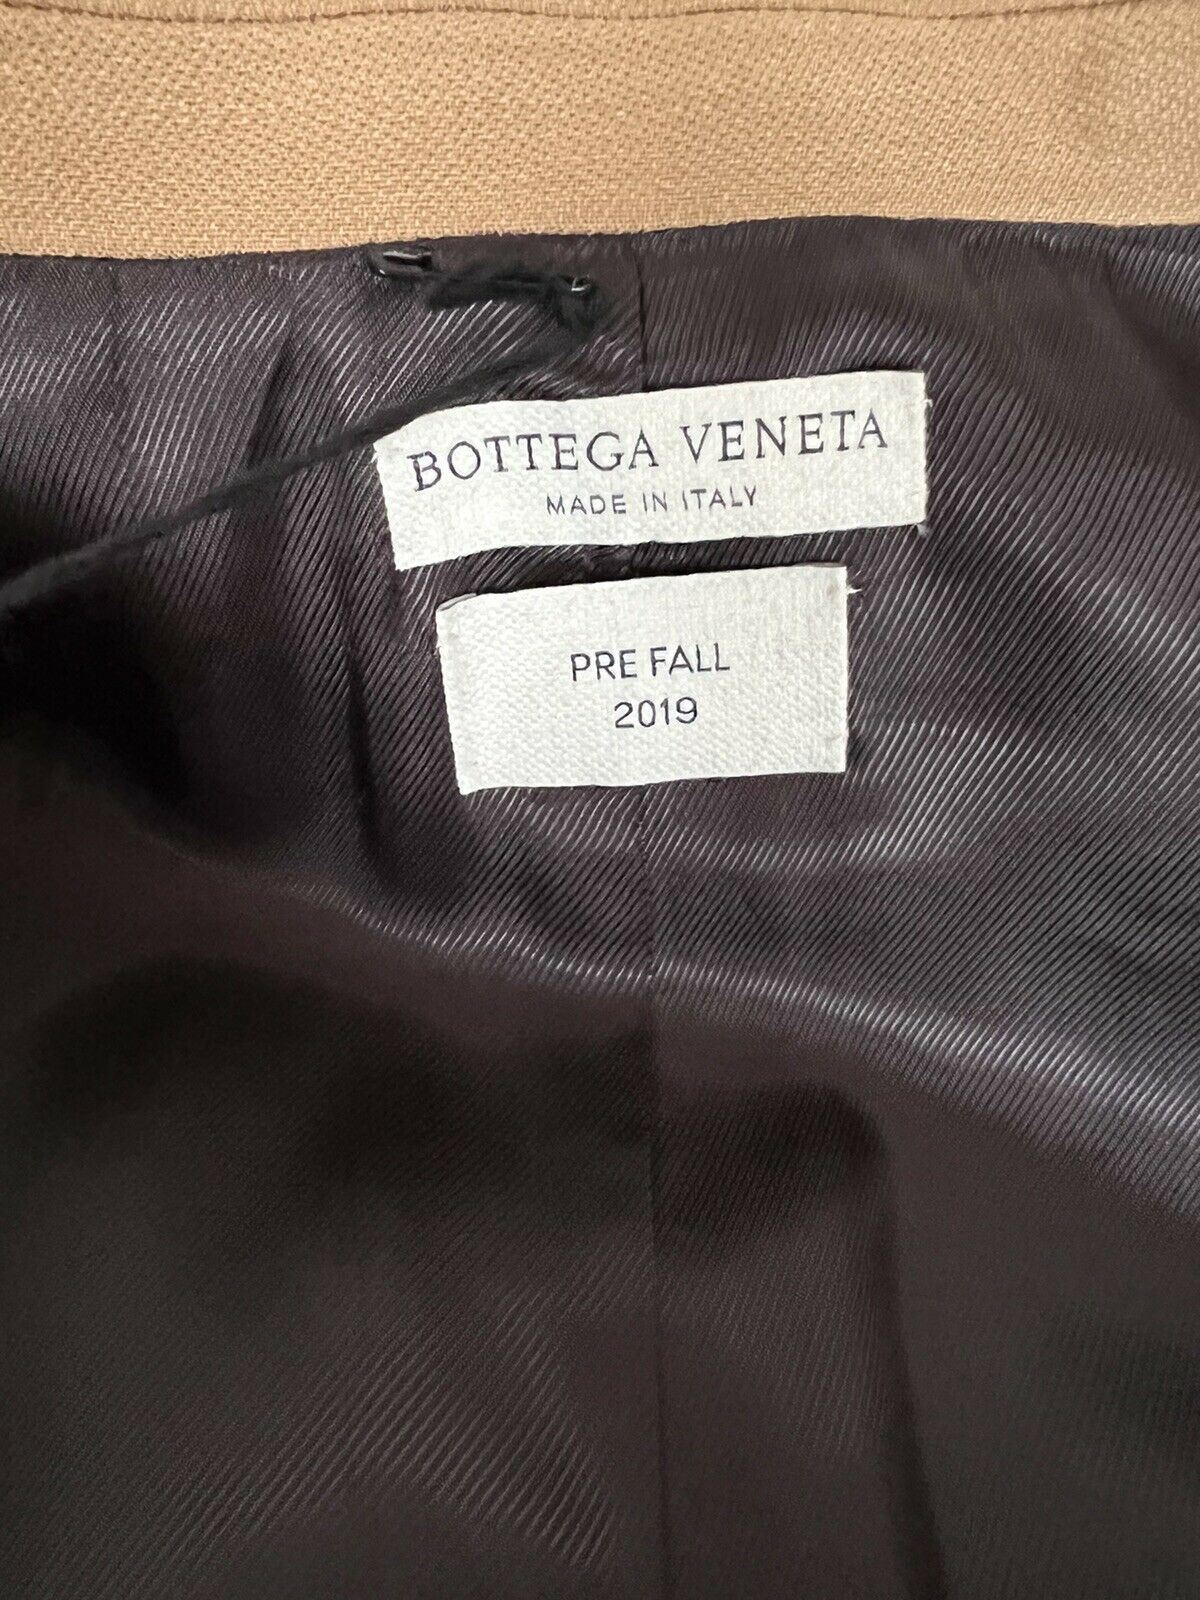 Neu mit Etikett: 2.880 $ Bottega Veneta Damen-Einreiherjacke in Kamel/Karamell, 42 US